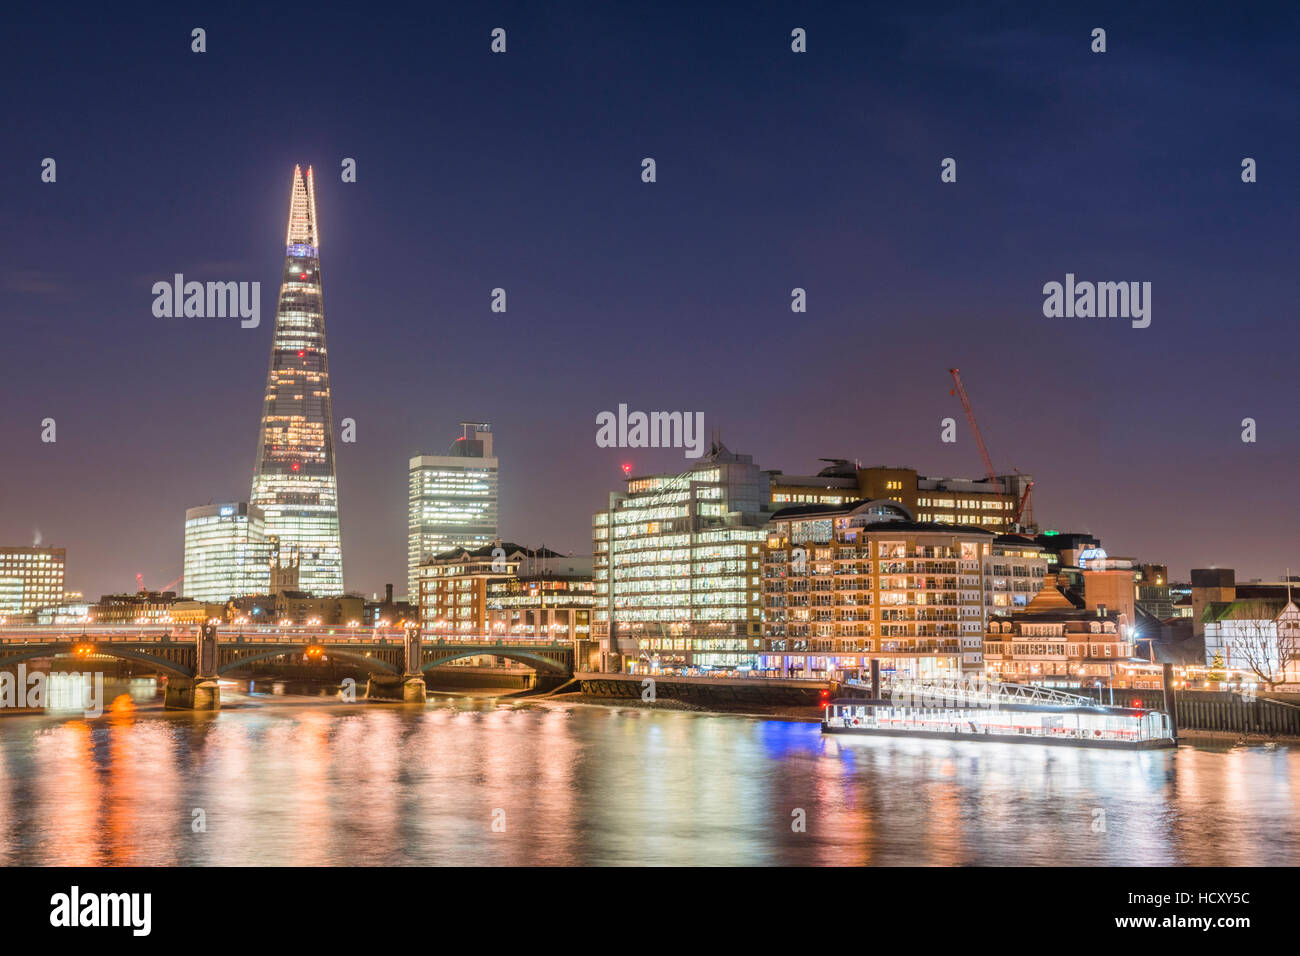 Die Scherbe und der Themse bei Nacht, London Borough of Southwark, London, UK Stockfoto